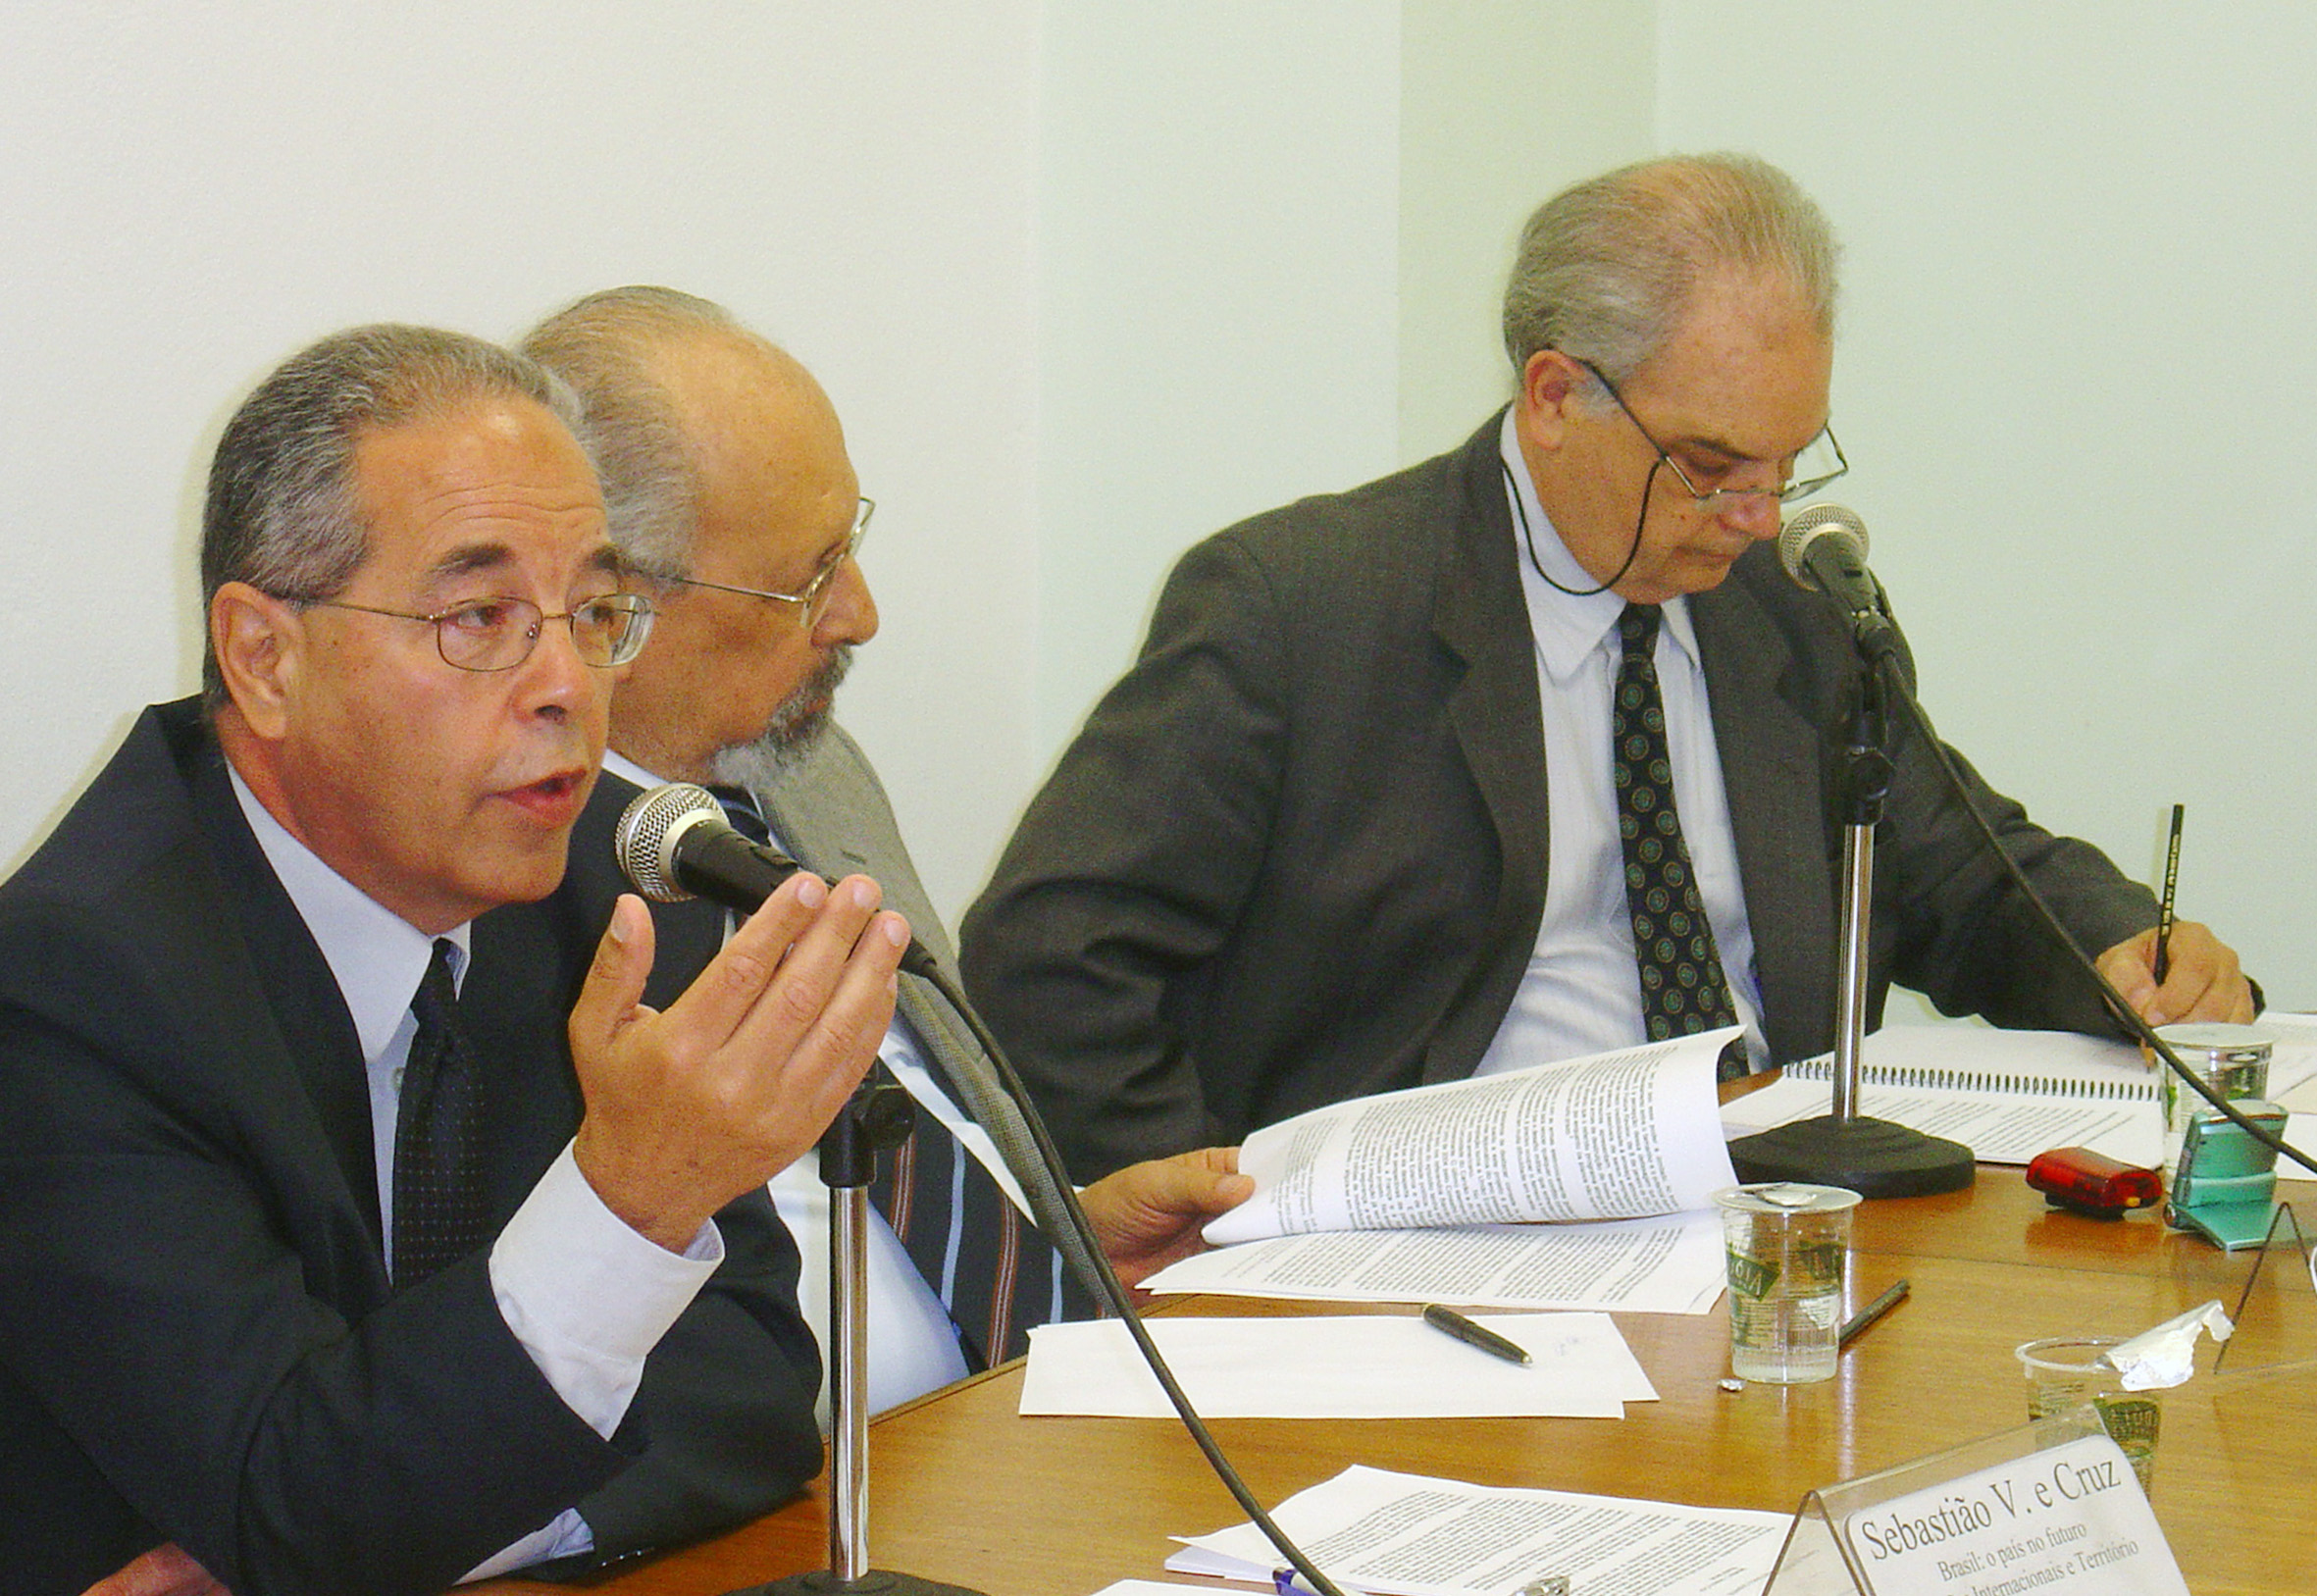 Sebastião Velasco e Cruz, Oliveiros Ferreira e Guilherme Leite da Silva Dias